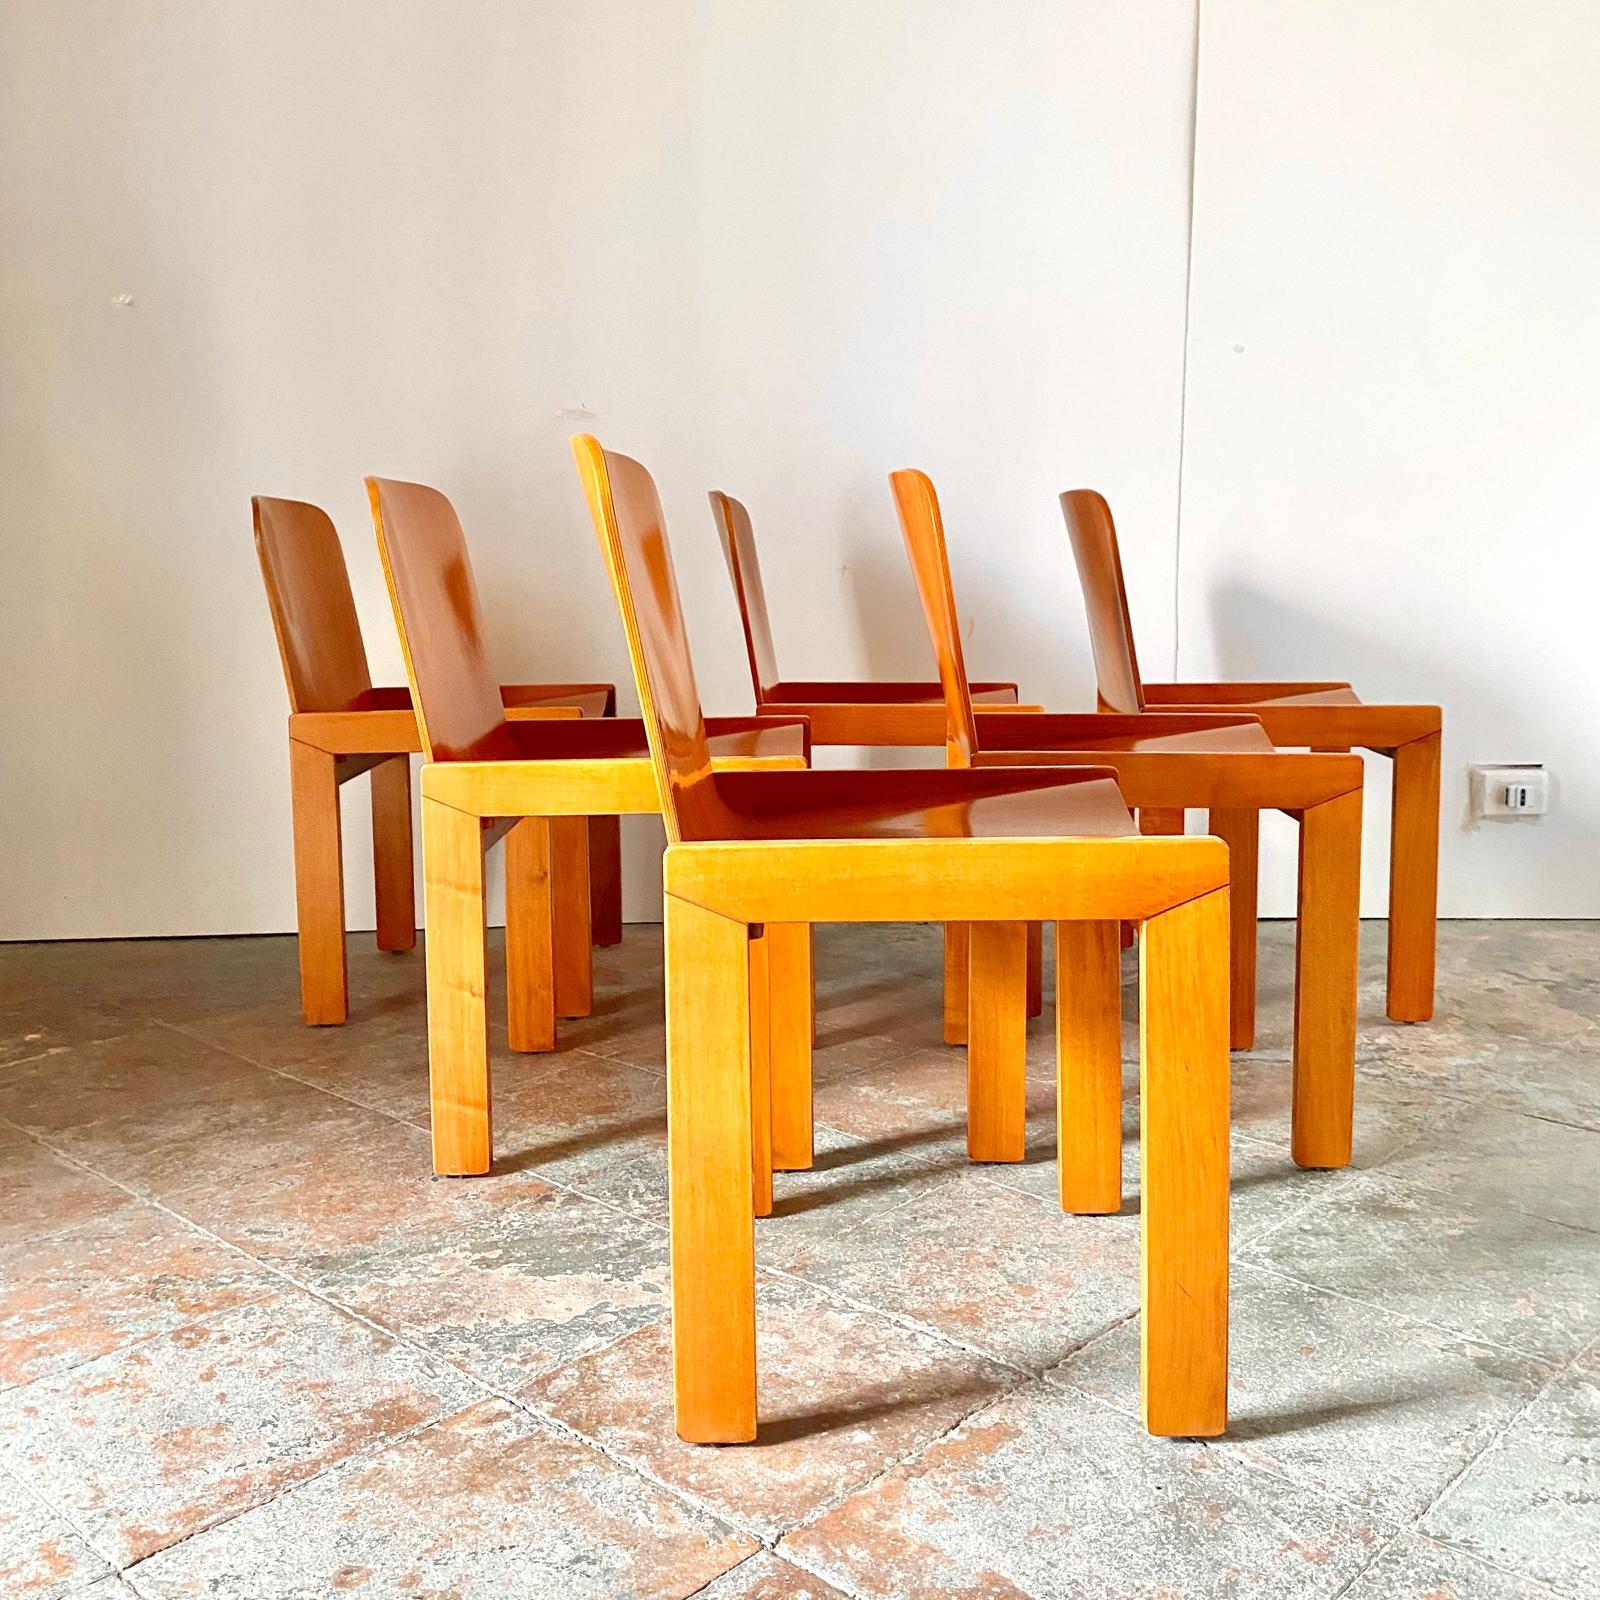 Ensemble de chaises de salle à manger modernes du milieu du siècle conçu par Tobia Scarpa pour Molteni et fabriqué en Italie dans les années 1970.

Ensemble au design raffiné composé de six bois courbés et d'une structure en bois massif finley